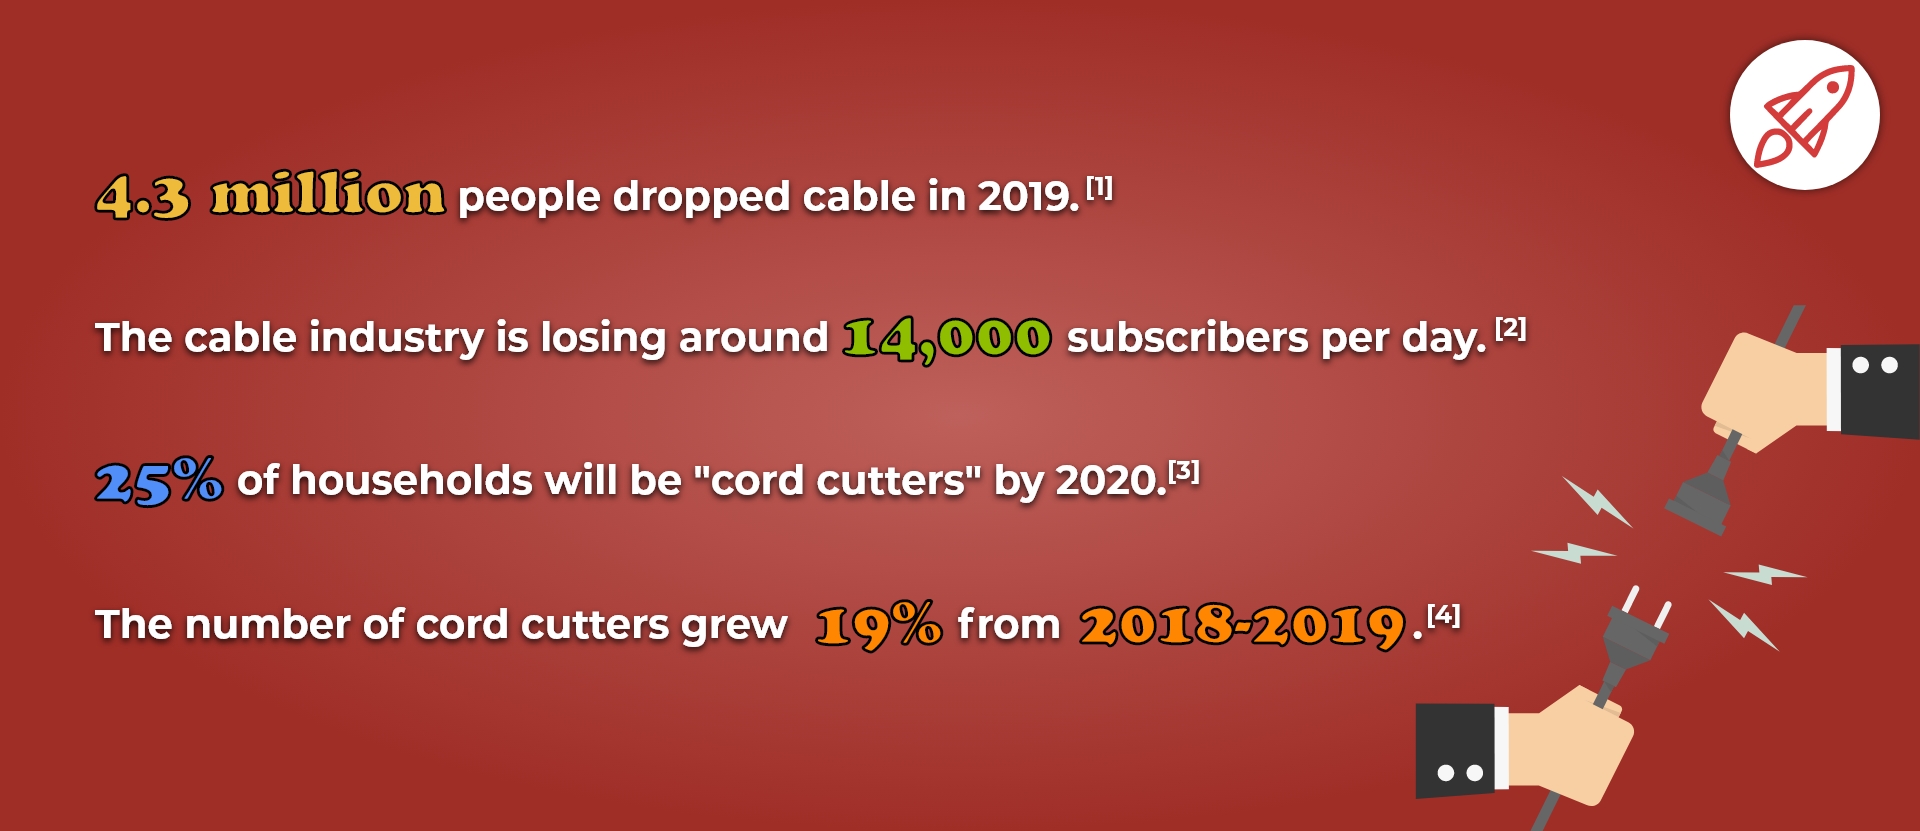 Cord Cutting Statistics in 2020